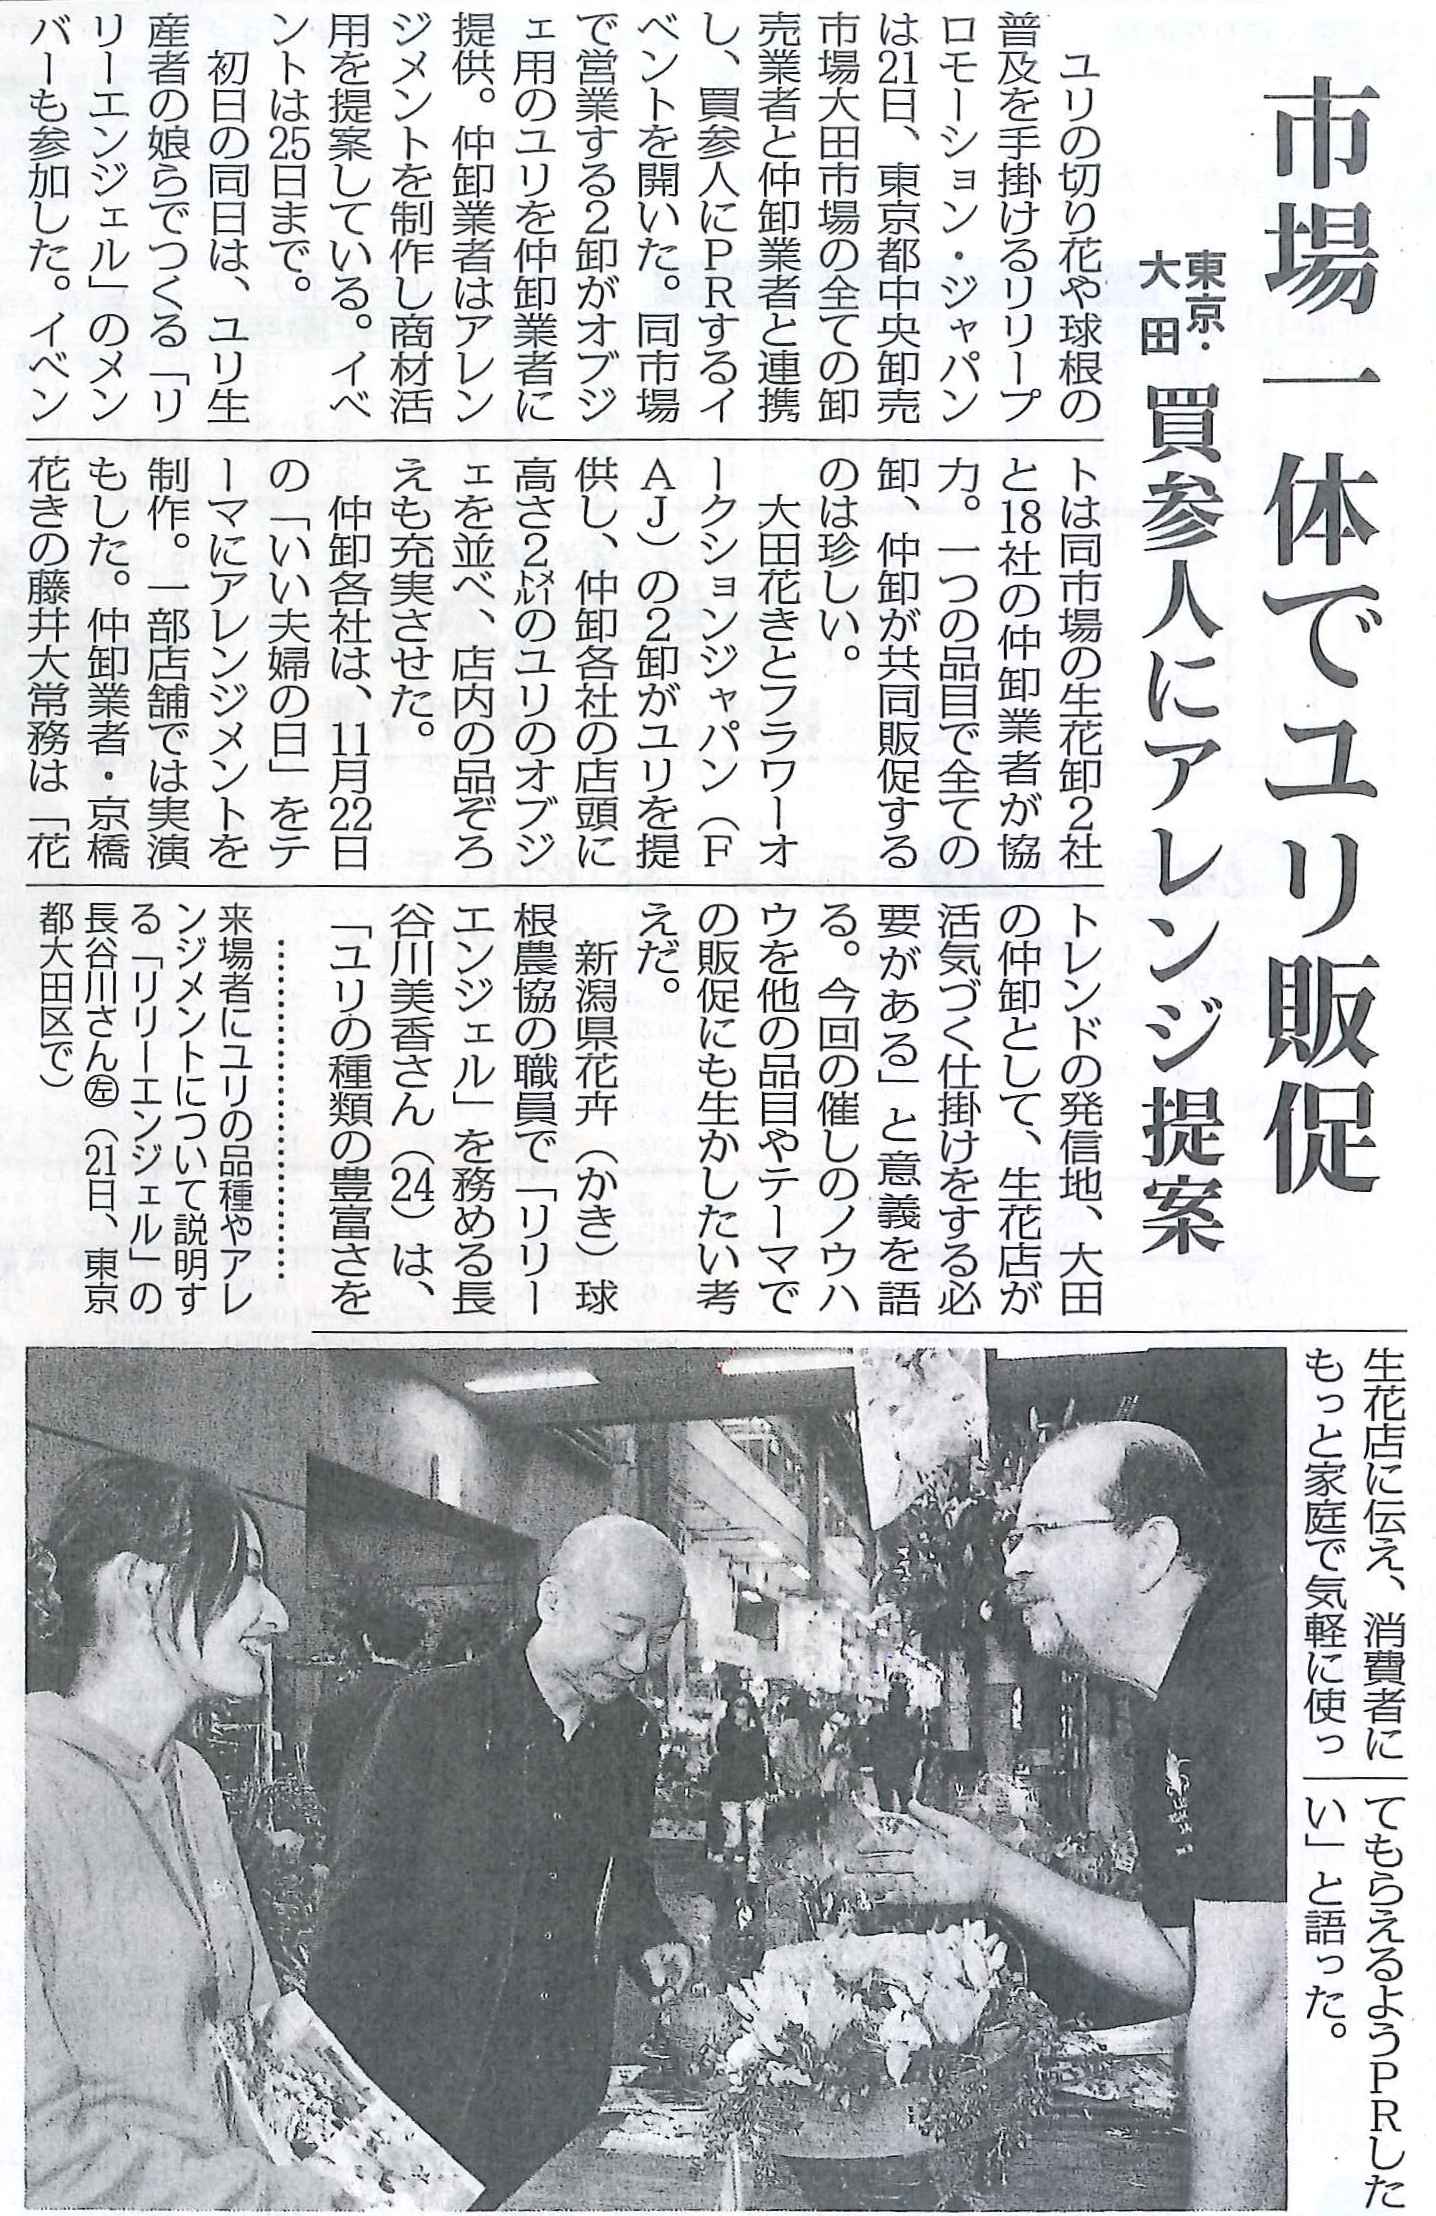 リリープロモーション・ジャパンの記事が日本農業新聞に掲載されました（2013/10/23）